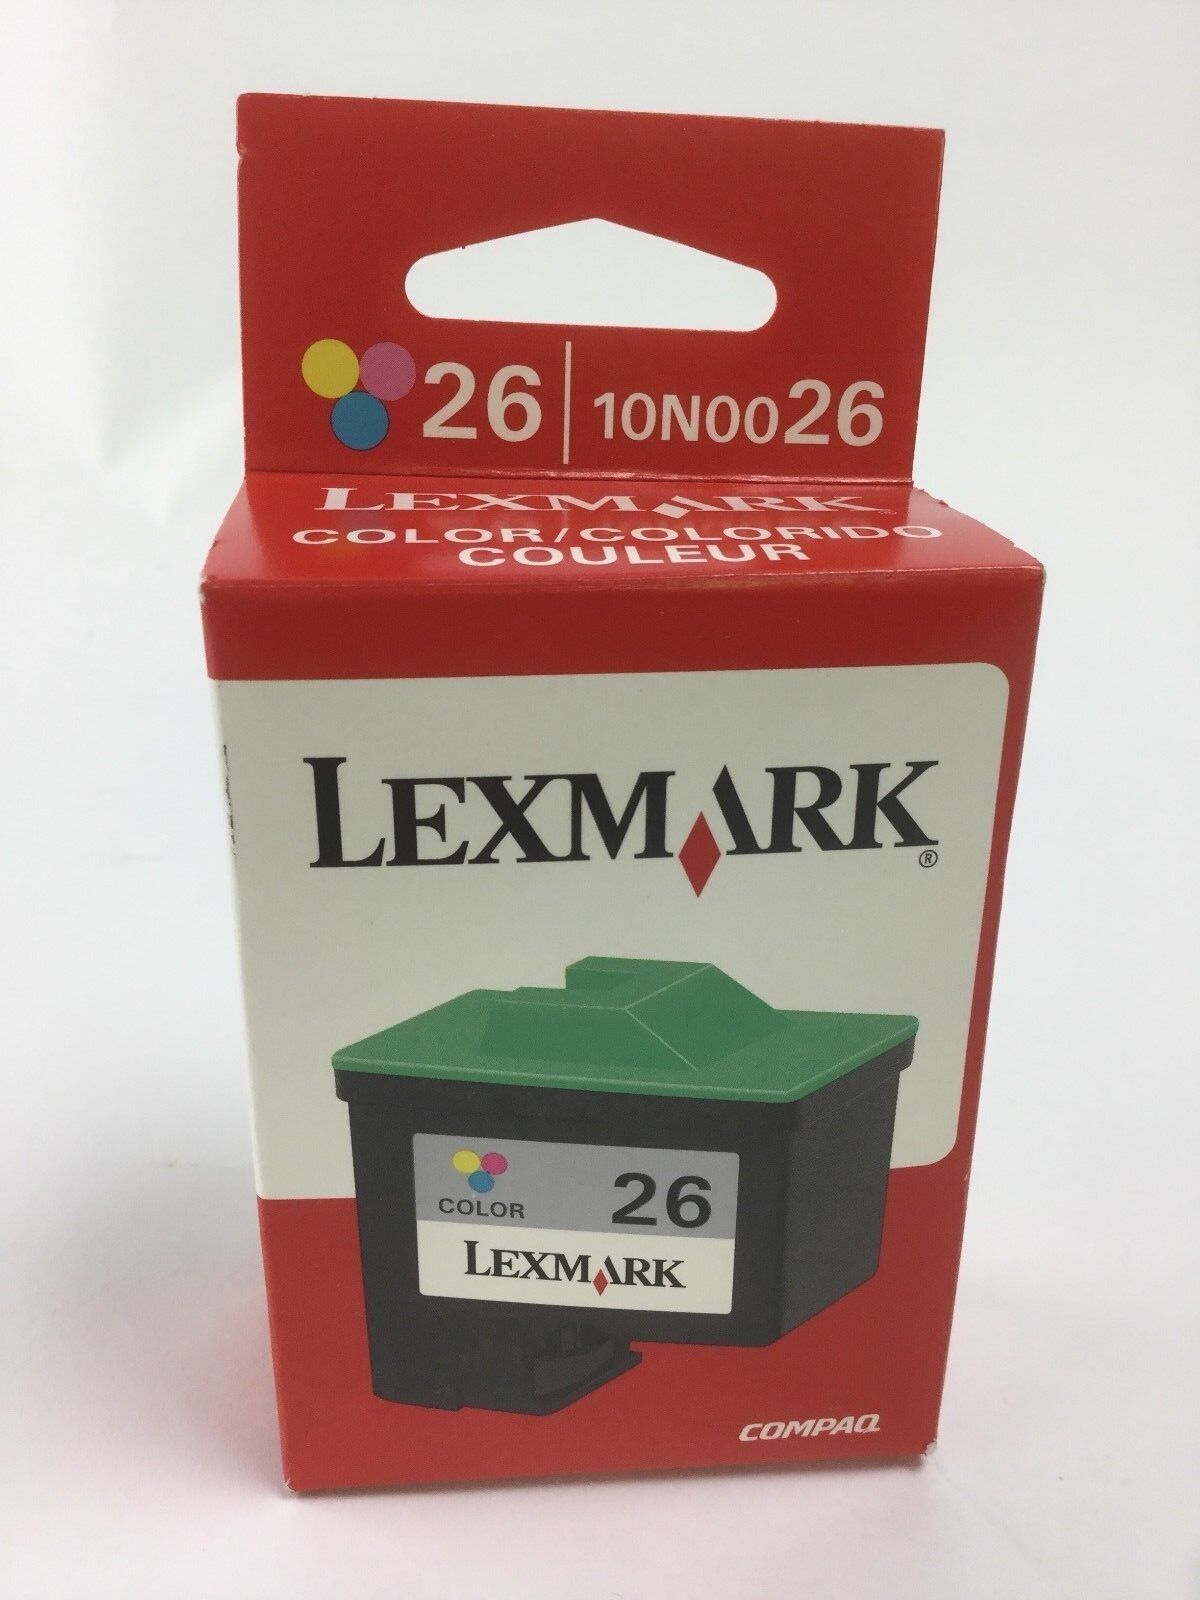 Lexmark 26 Tri-Color Ink Cartridge 10N0026 Genuine New Factory Sealed